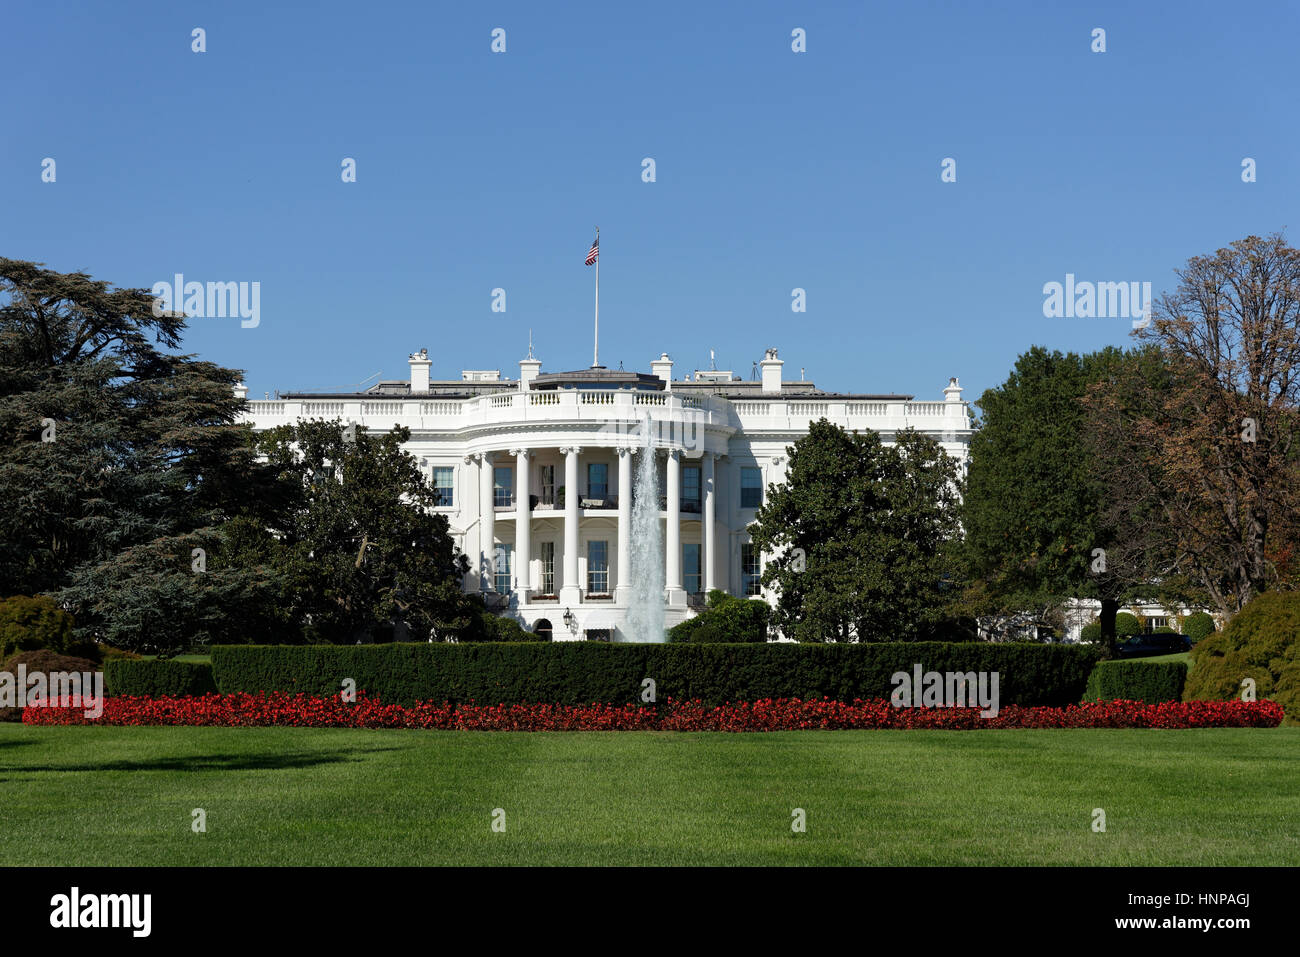 The White House, Washington, DC, USA Stock Photo